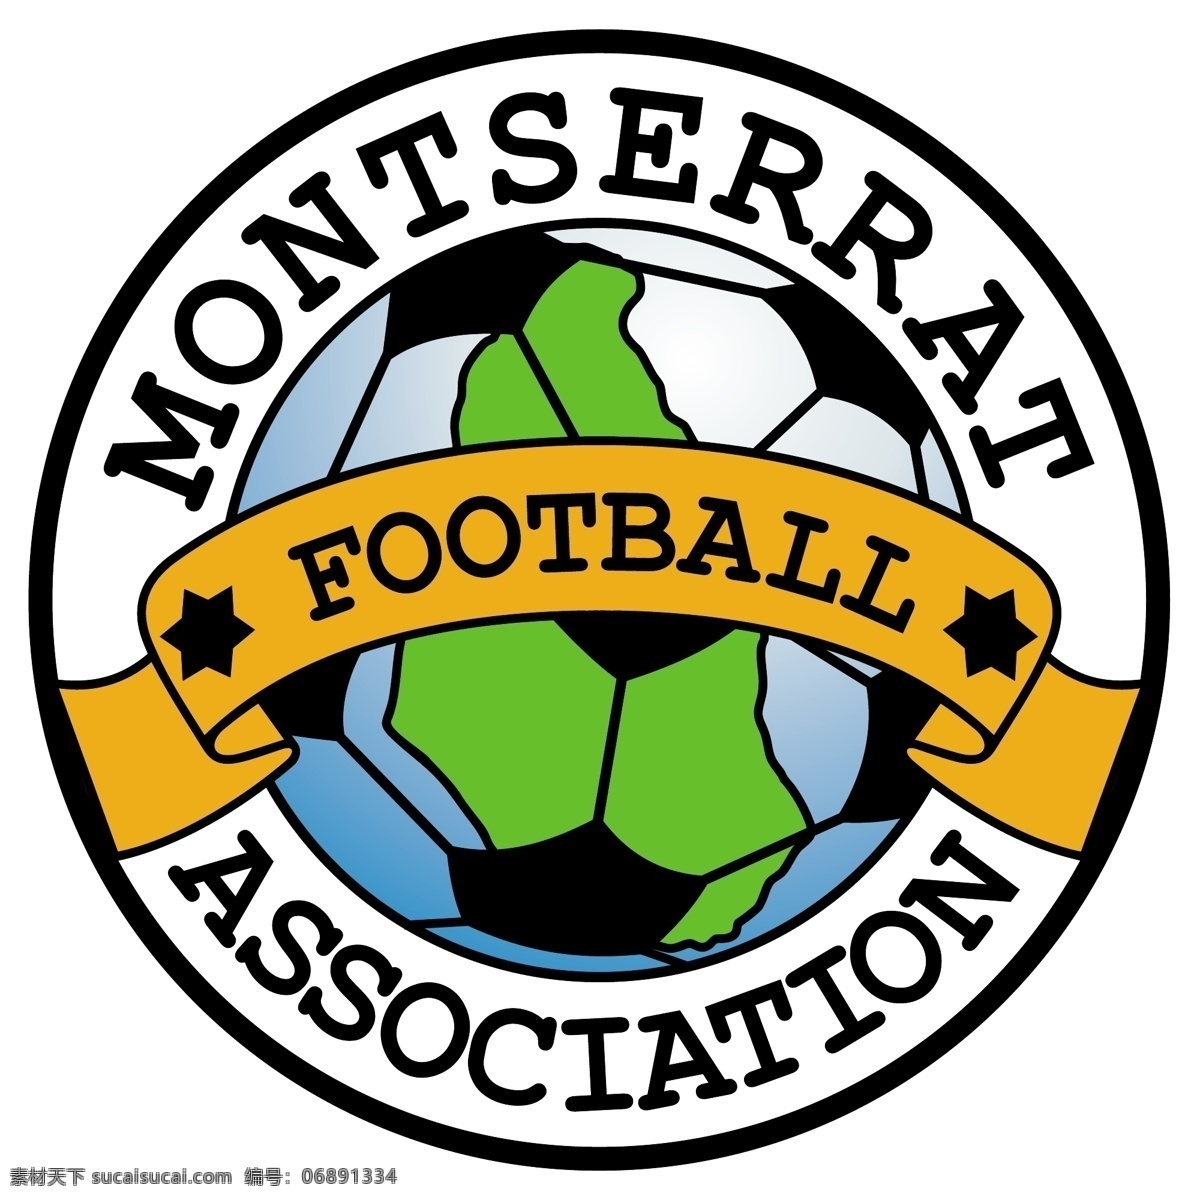 蒙特 塞 拉特 足球 协会 免费 标识 psd源文件 logo设计